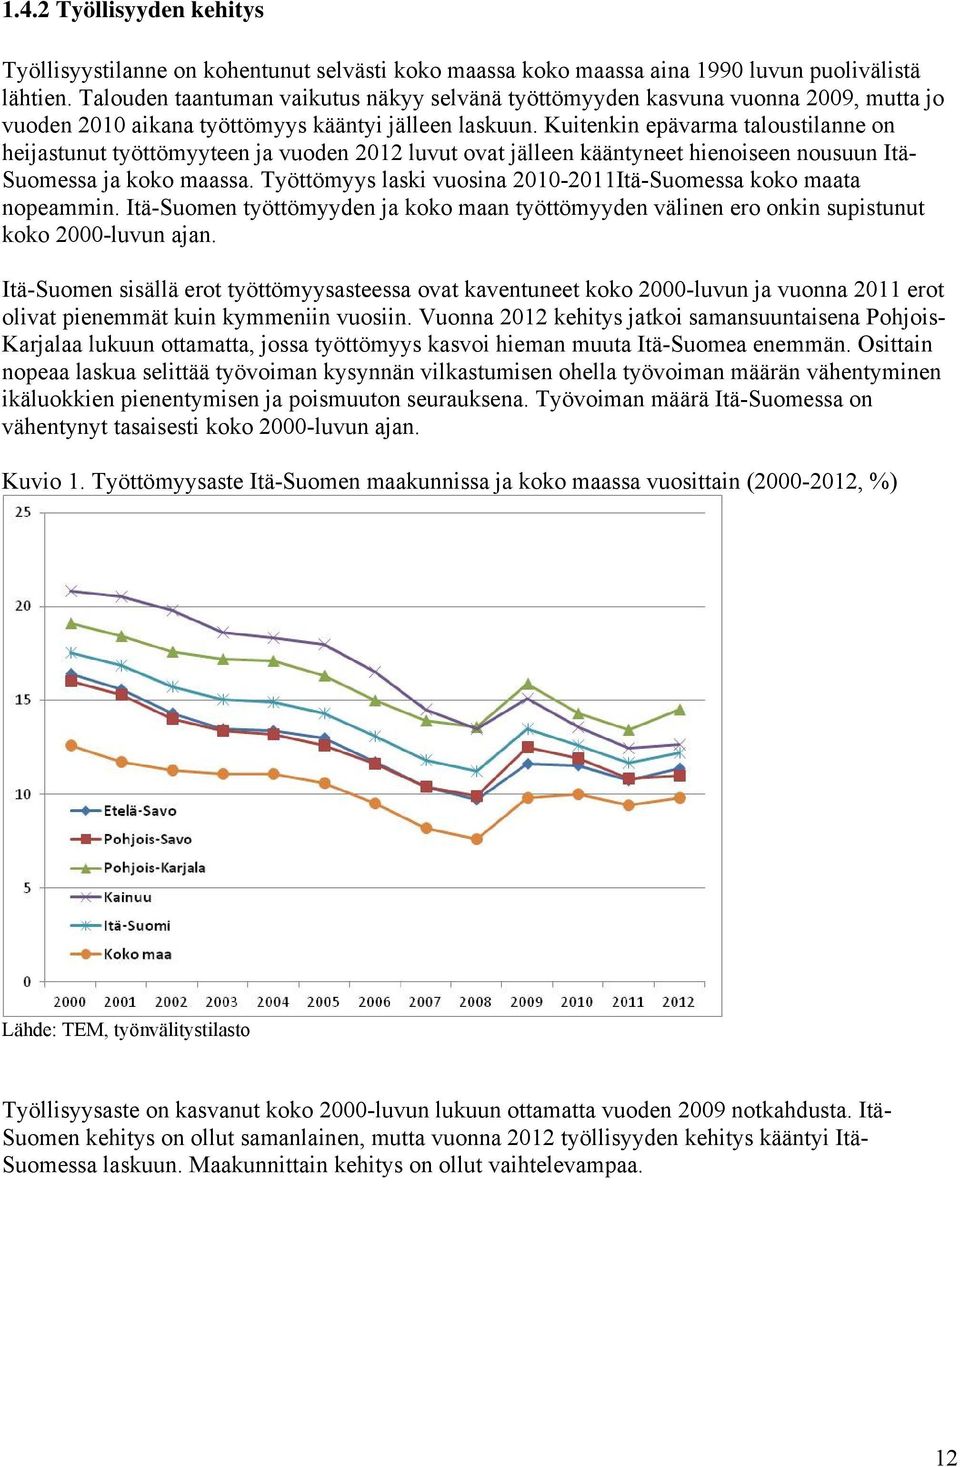 Kuitenkin epävarma taloustilanne on heijastunut työttömyyteen ja vuoden 2012 luvut ovat jälleen kääntyneet hienoiseen nousuun Itä- Suomessa ja koko maassa.